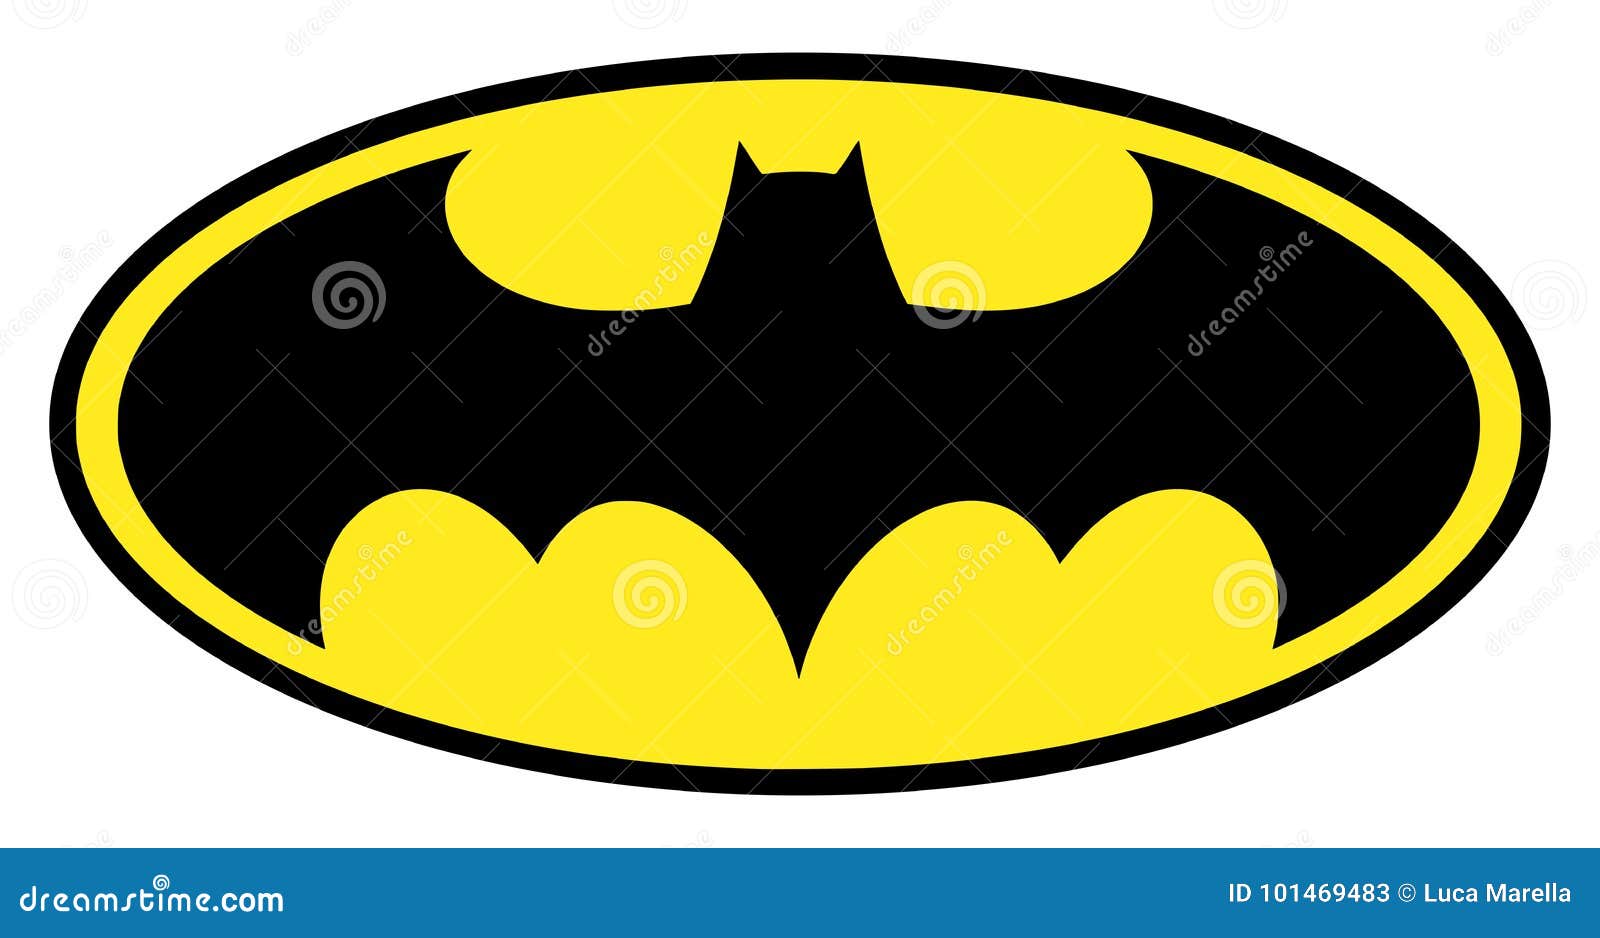 Batman Sign Stock Illustrations – 326 Batman Sign Stock Illustrations,  Vectors & Clipart - Dreamstime